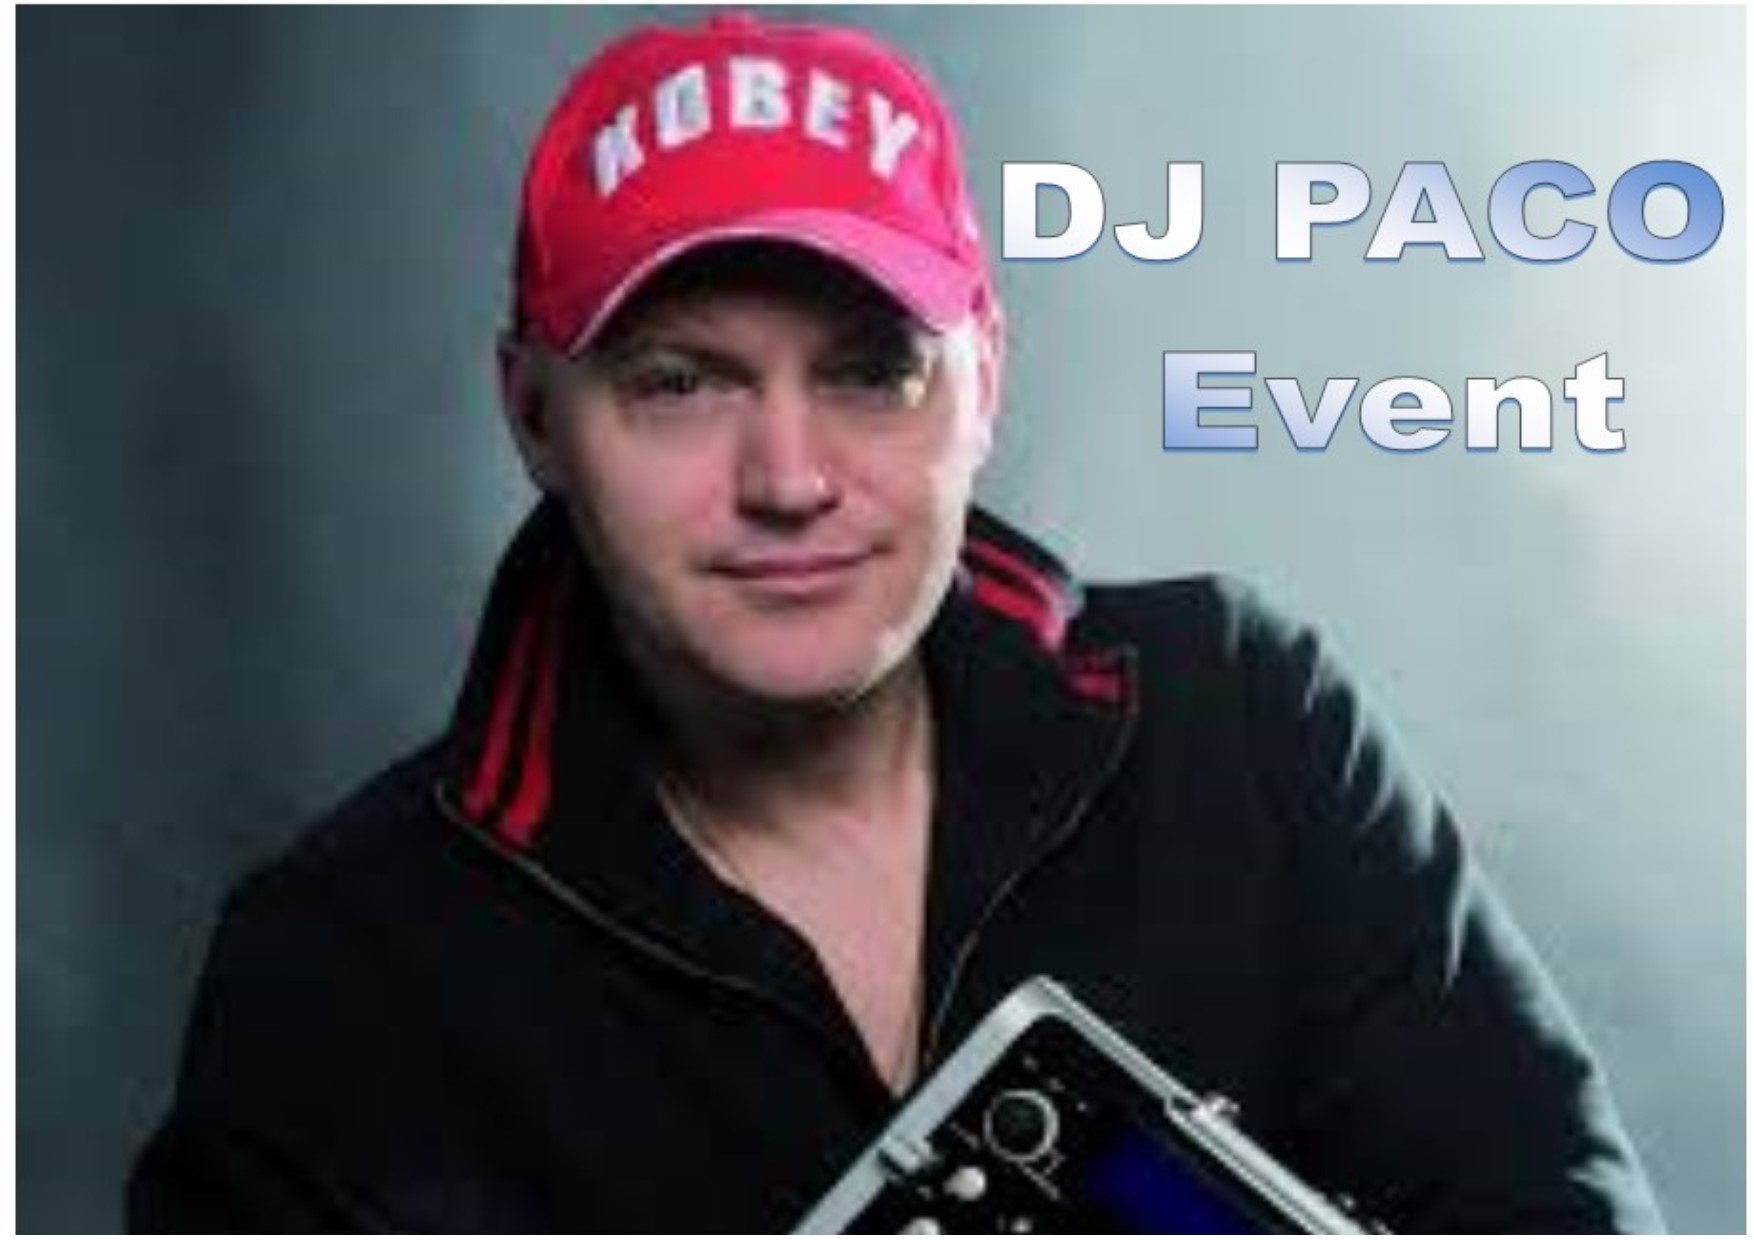 PACO DJ EVENT EUROPE - Partenaire de Prestacocktails - Barman à domicile - Nantes - Evénementiel - Organisation de soirée